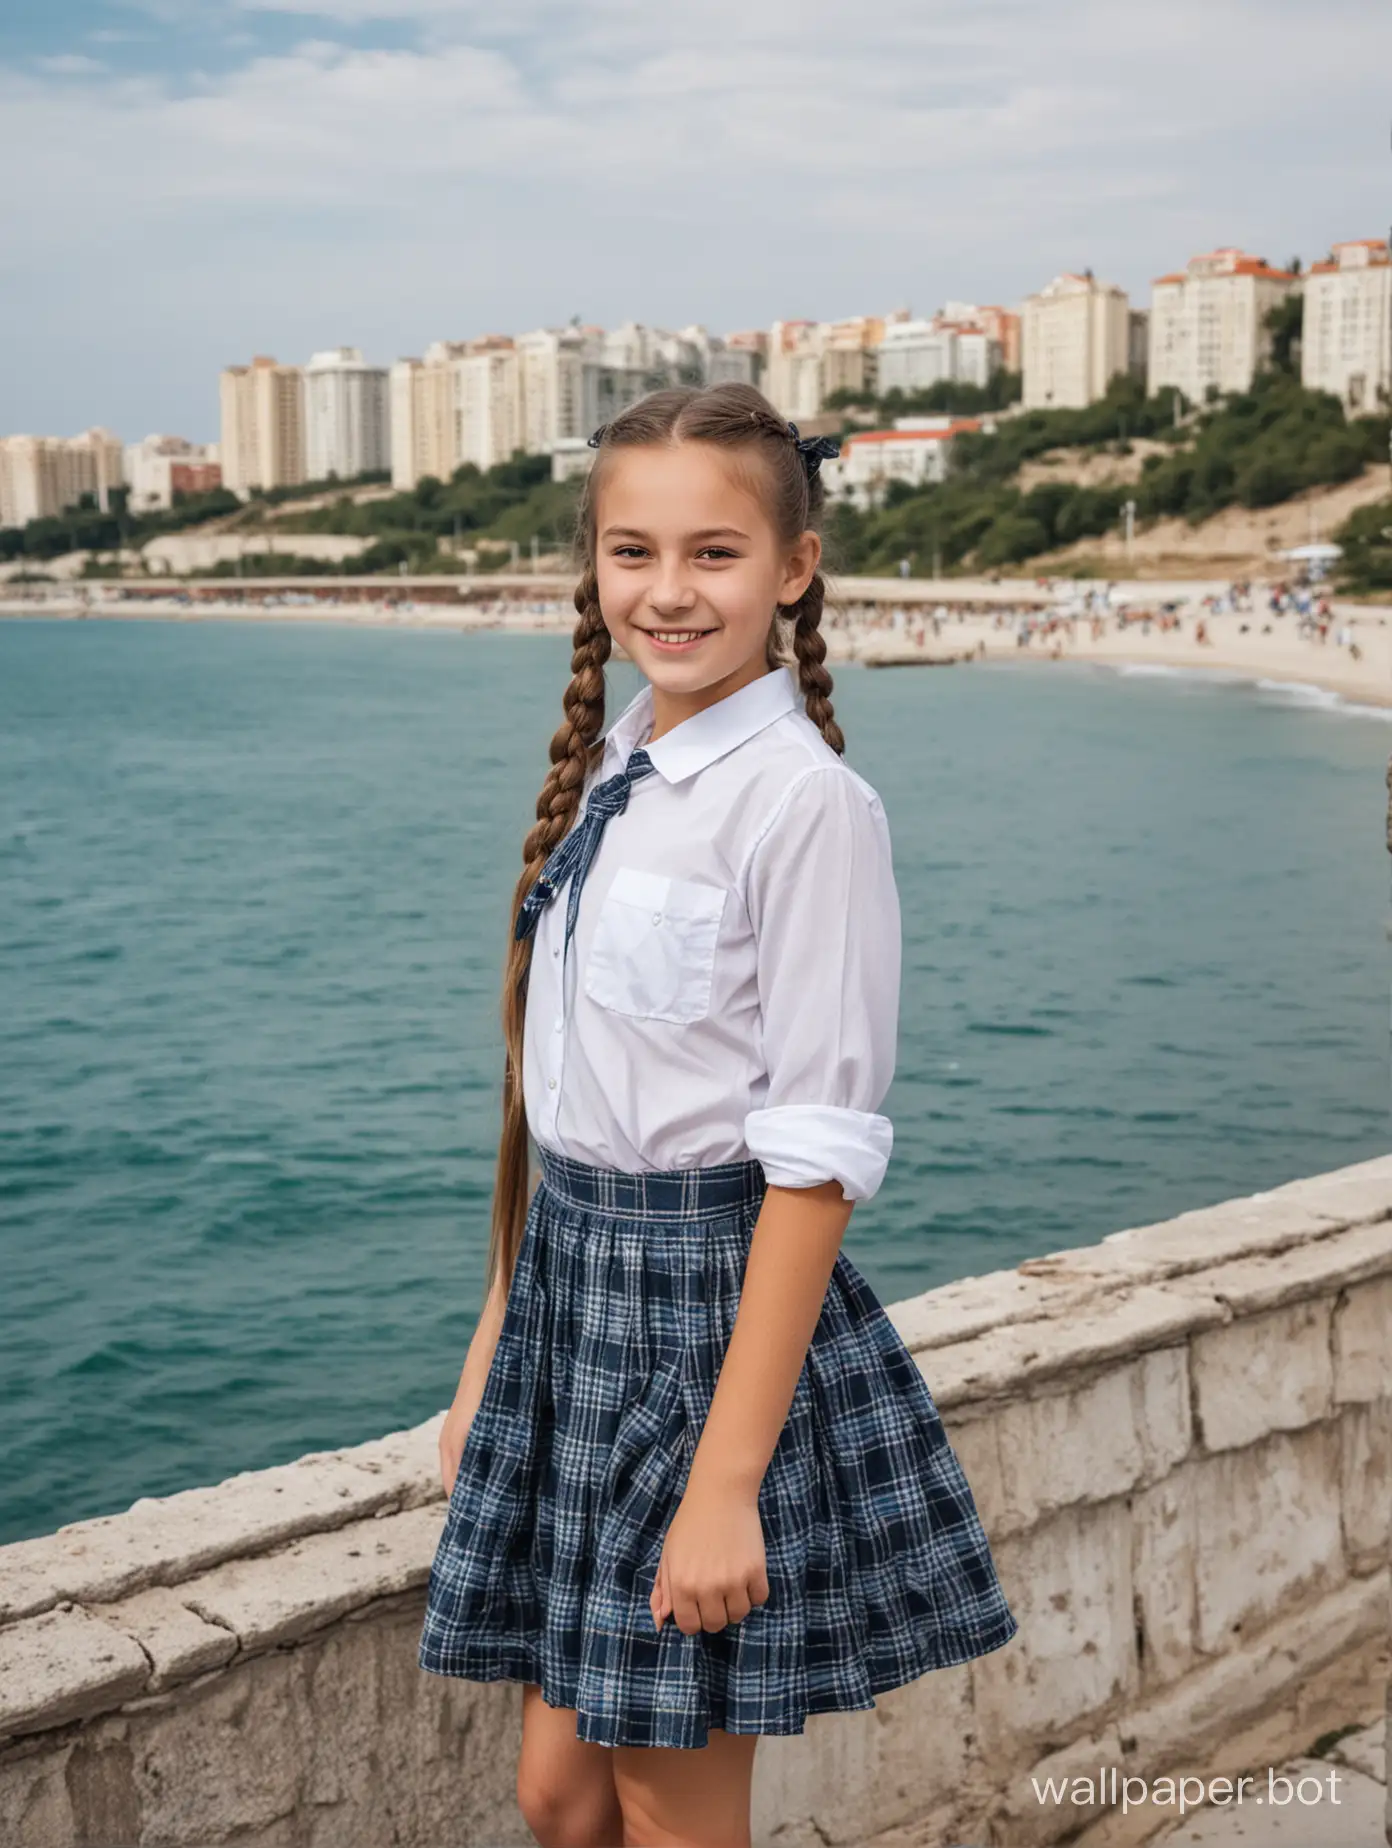 Красивая советская школьница 11 лет с хвостиками в Крыму на фоне моря, в полный рост, динамичные позы, улыбка, люди и строения на заднем плане